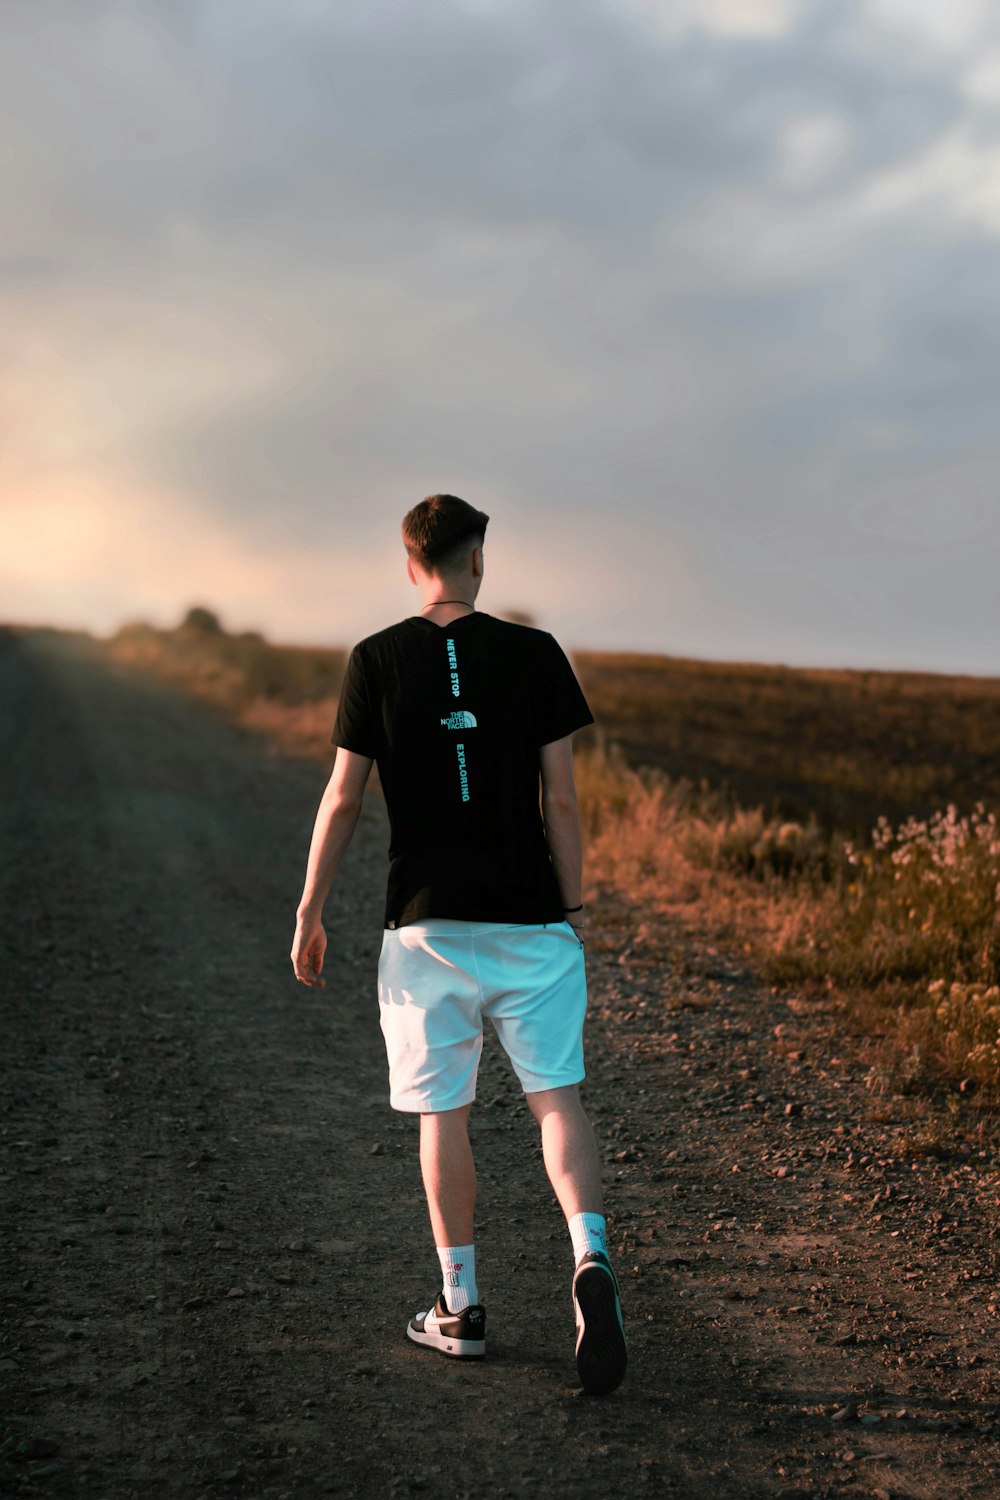 Un homme marchant sur un chemin de terre avec une croix sur sa chemise  photo – Photo Shorts Gratuite sur Unsplash